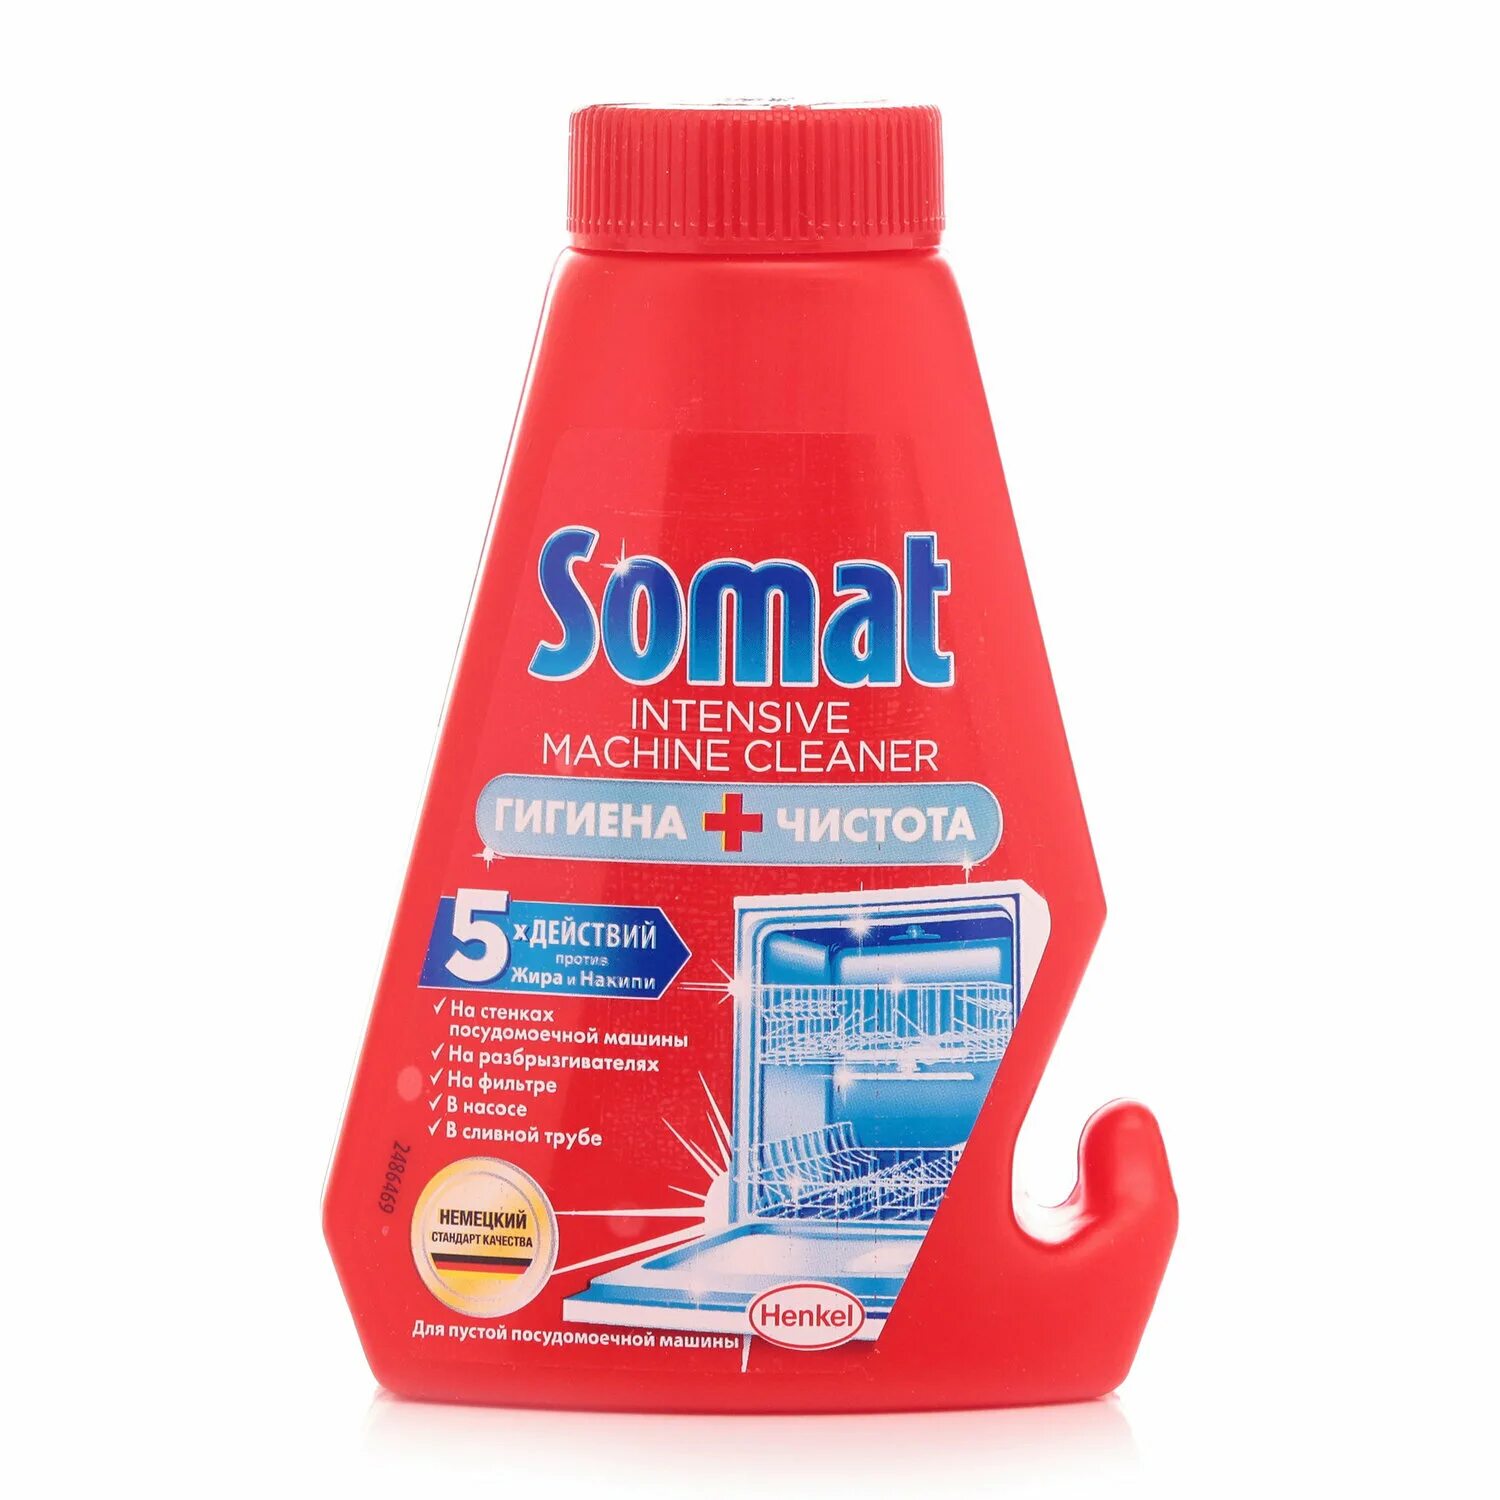 Купить сомат для посудомоечной машины. Somat Intensive Machine. Somat Intensive Machine Cleaner. Сомат для чистки посудомоечных машин. Somat Intensive чистящее средство.